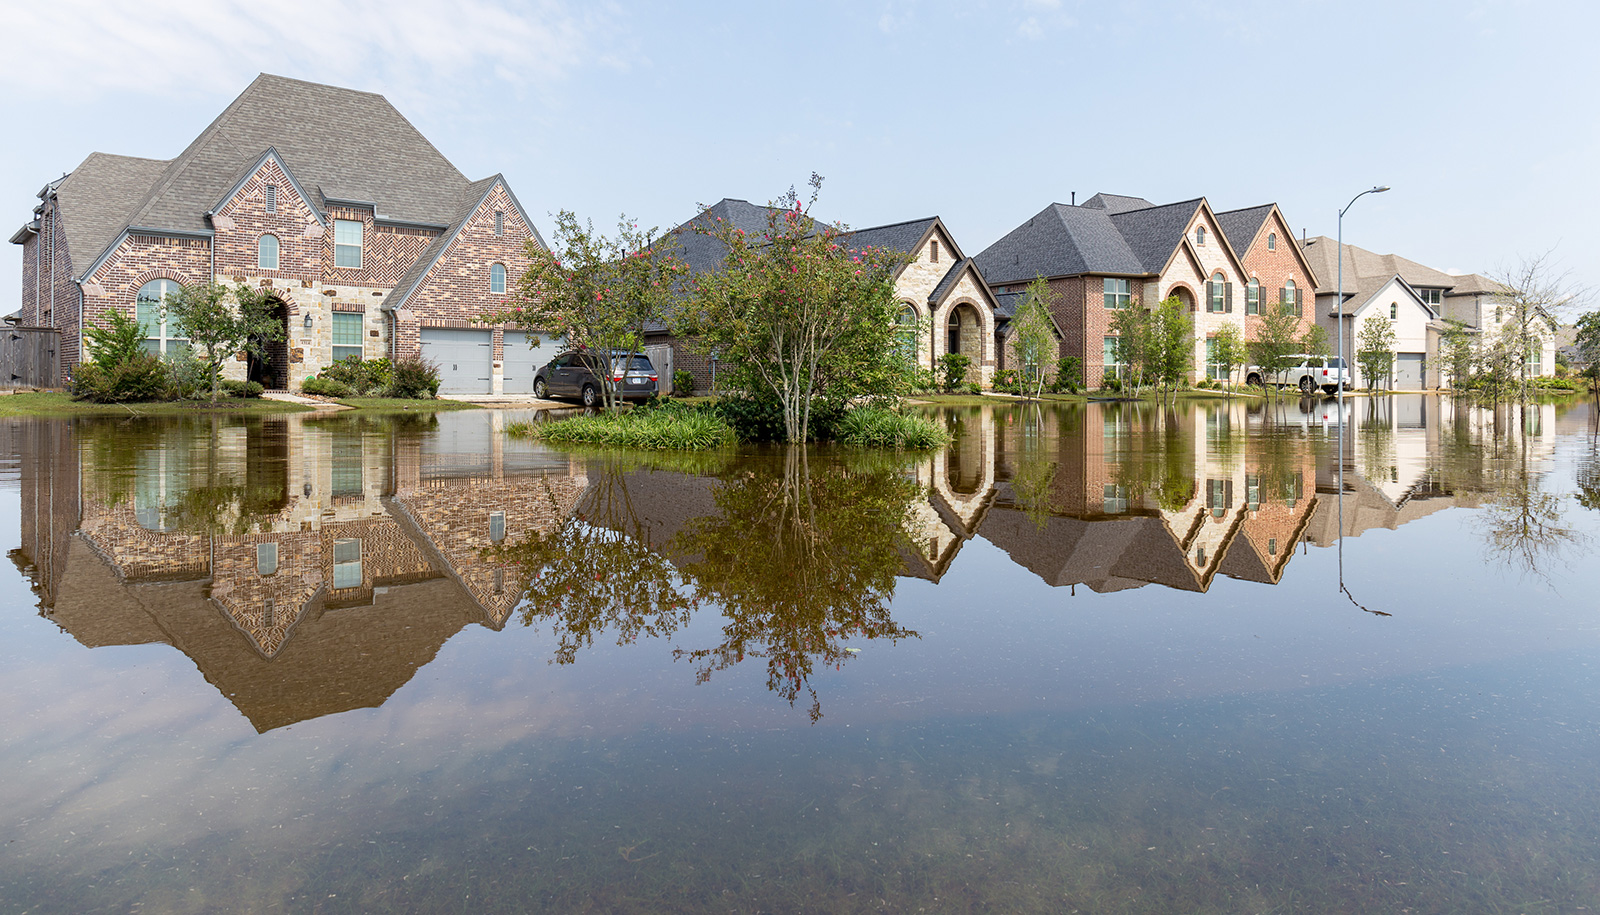 NFIP vs Private Flood Insurance what's better?